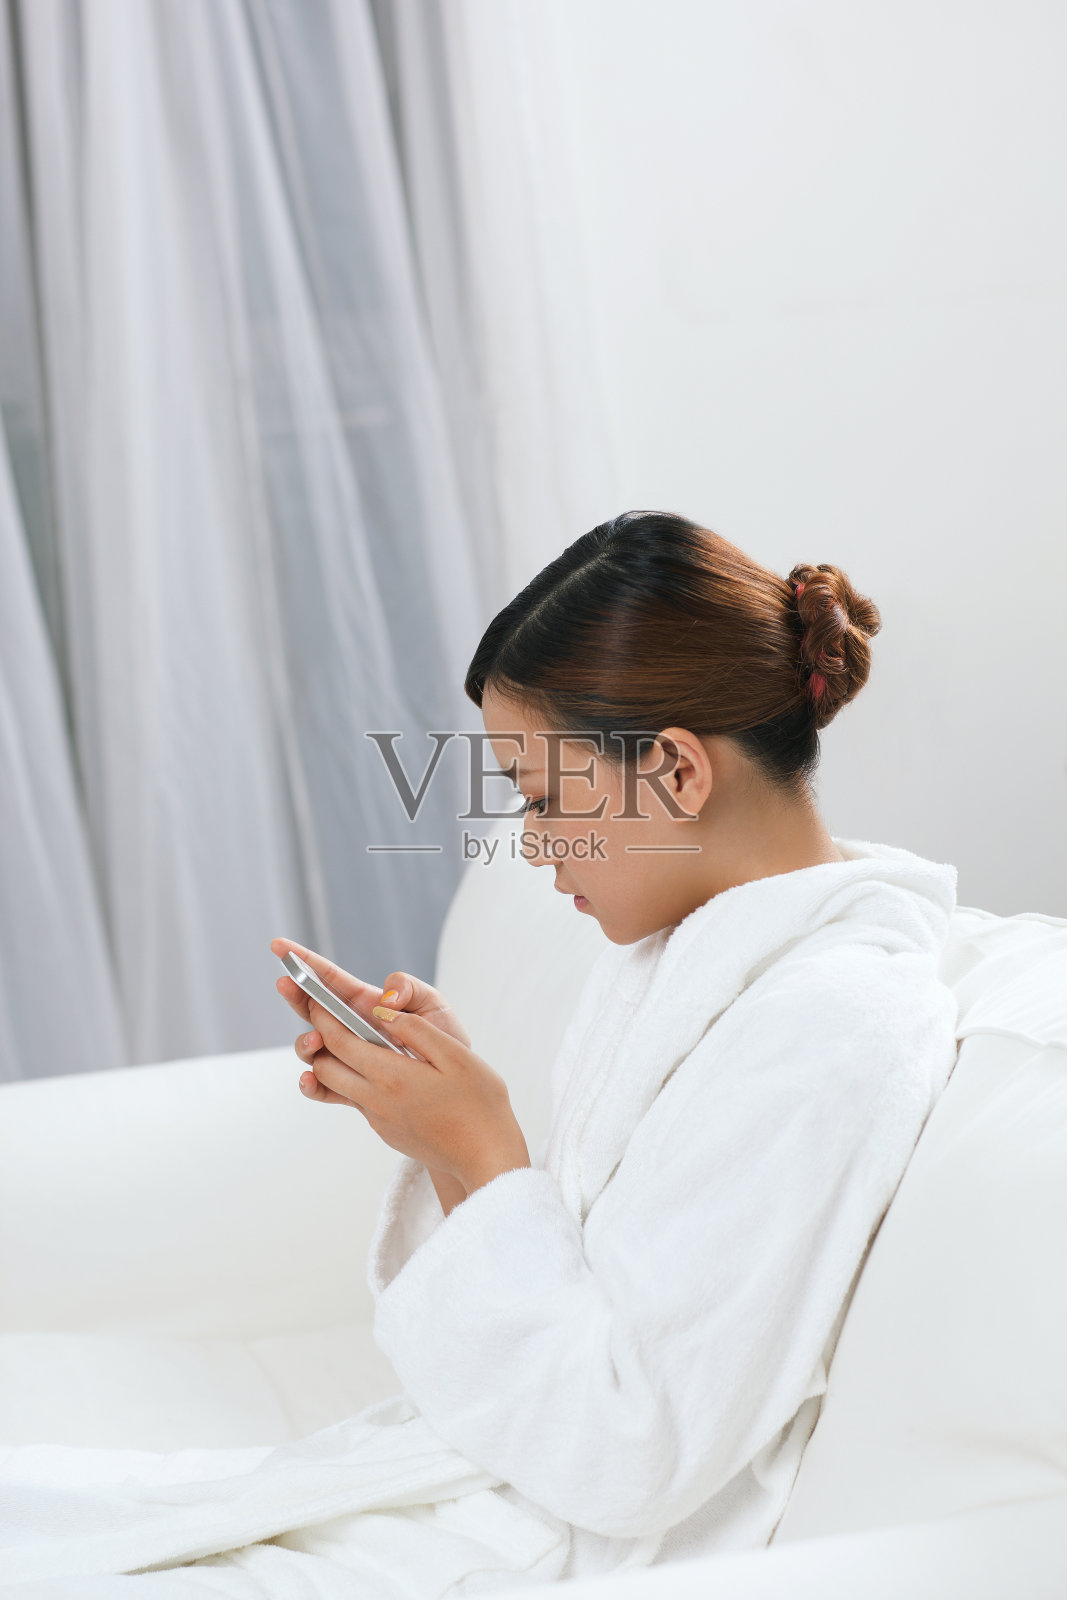 年轻女子穿着浴袍坐在沙发上发短信照片摄影图片